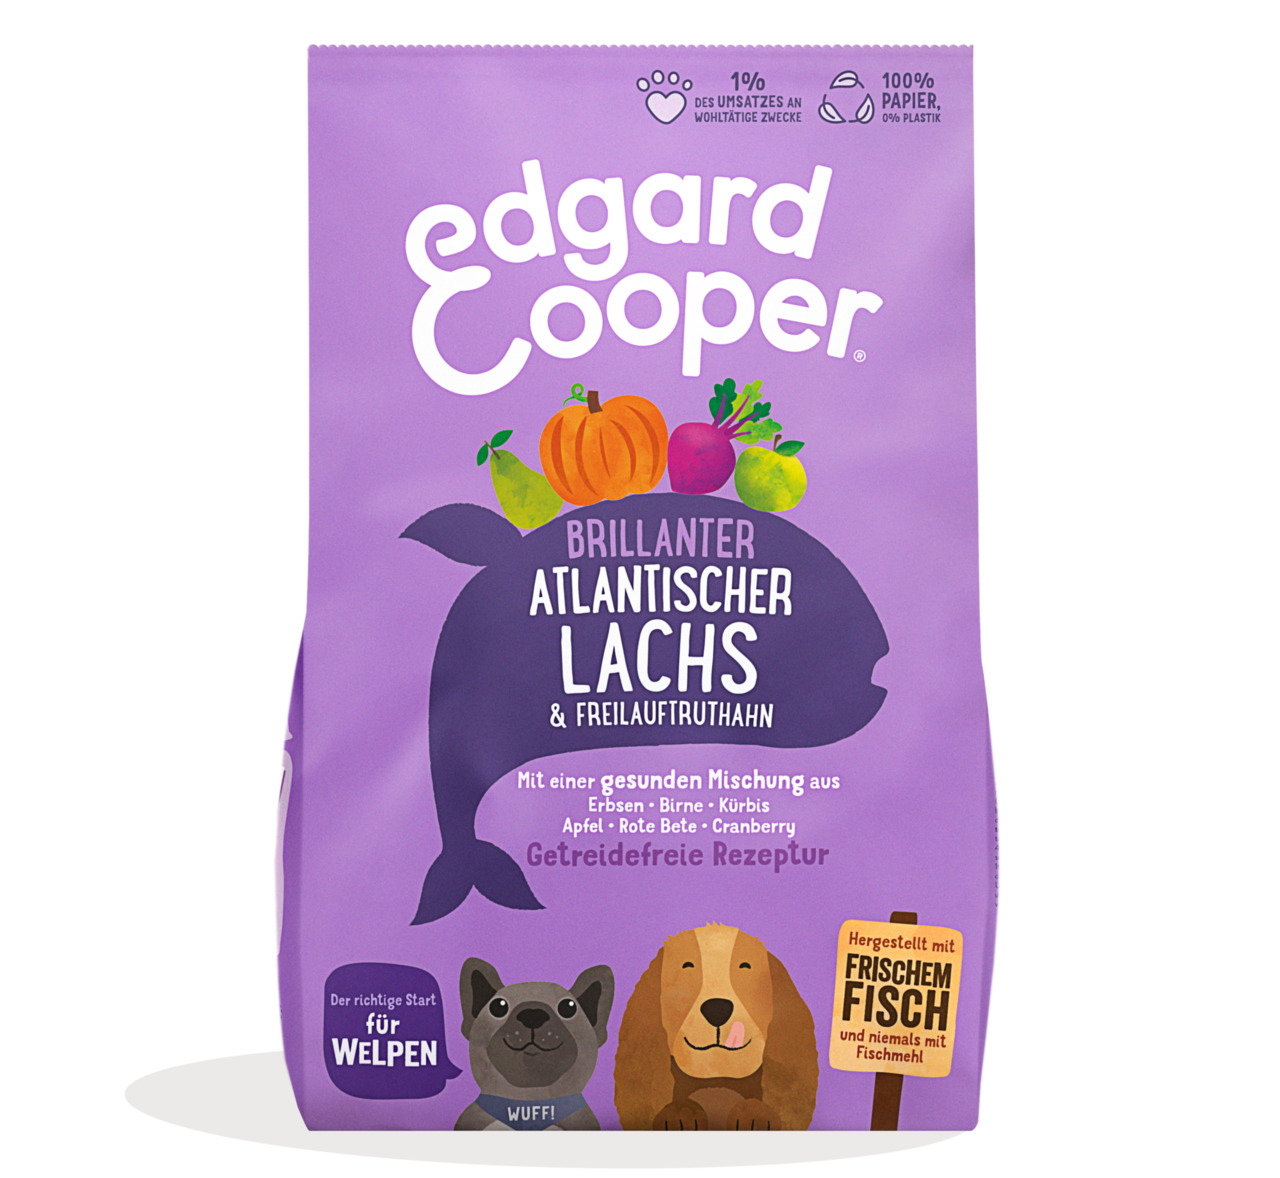 Edgard & Cooper Welpen brillanter atlantischer Lachs & Freilauftruthahn Junior Hunde Trockenfutter 12 kg